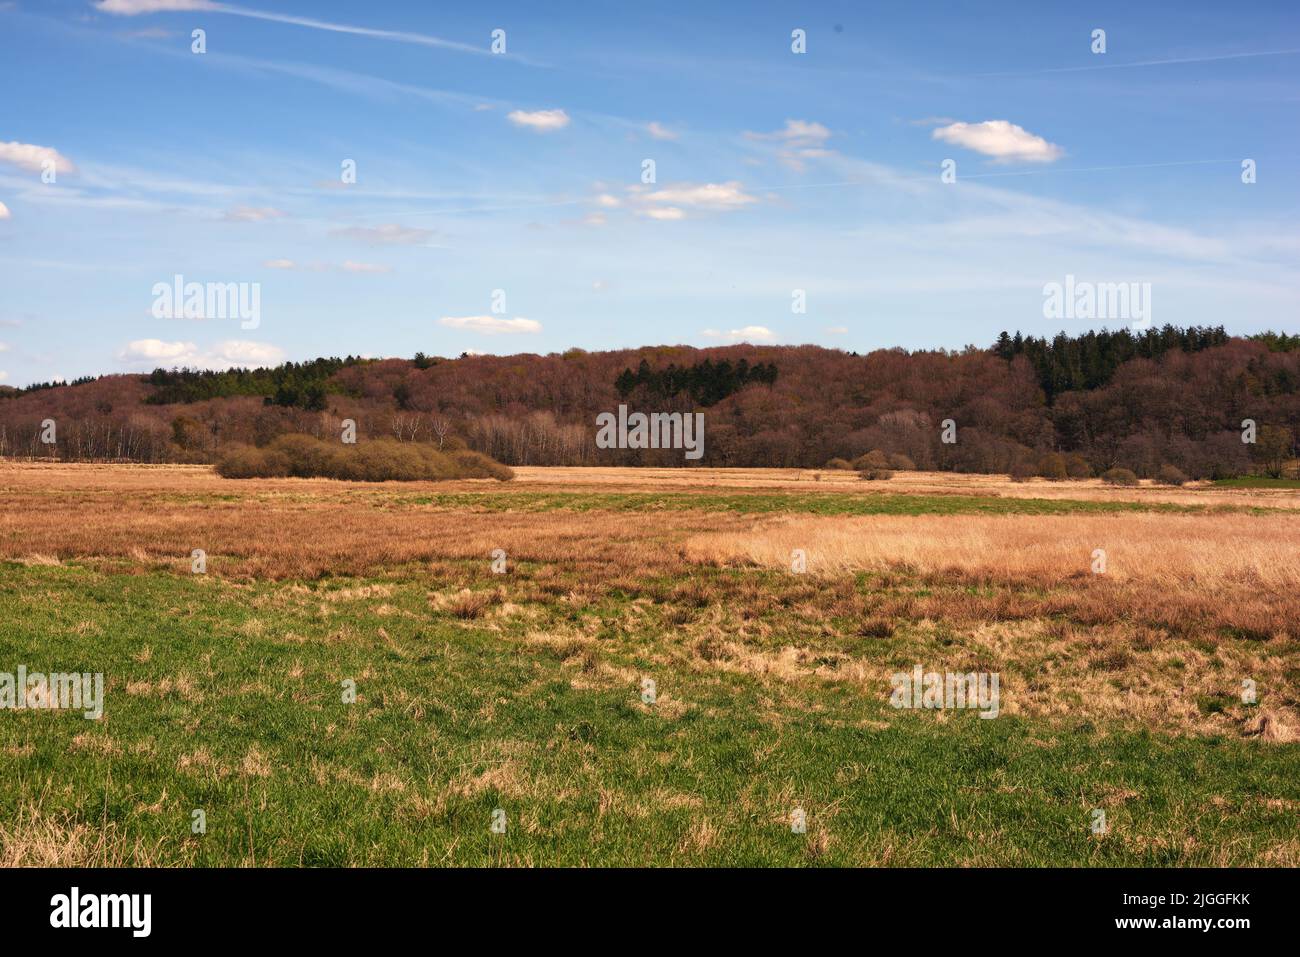 Panoramablick auf die ländliche Landschaft im Königreich Dänemark gegen blauen Himmel Copyspace und frische Luft. Ruhige Harmonie in der Natur mit Sträuchern und Bäumen Stockfoto